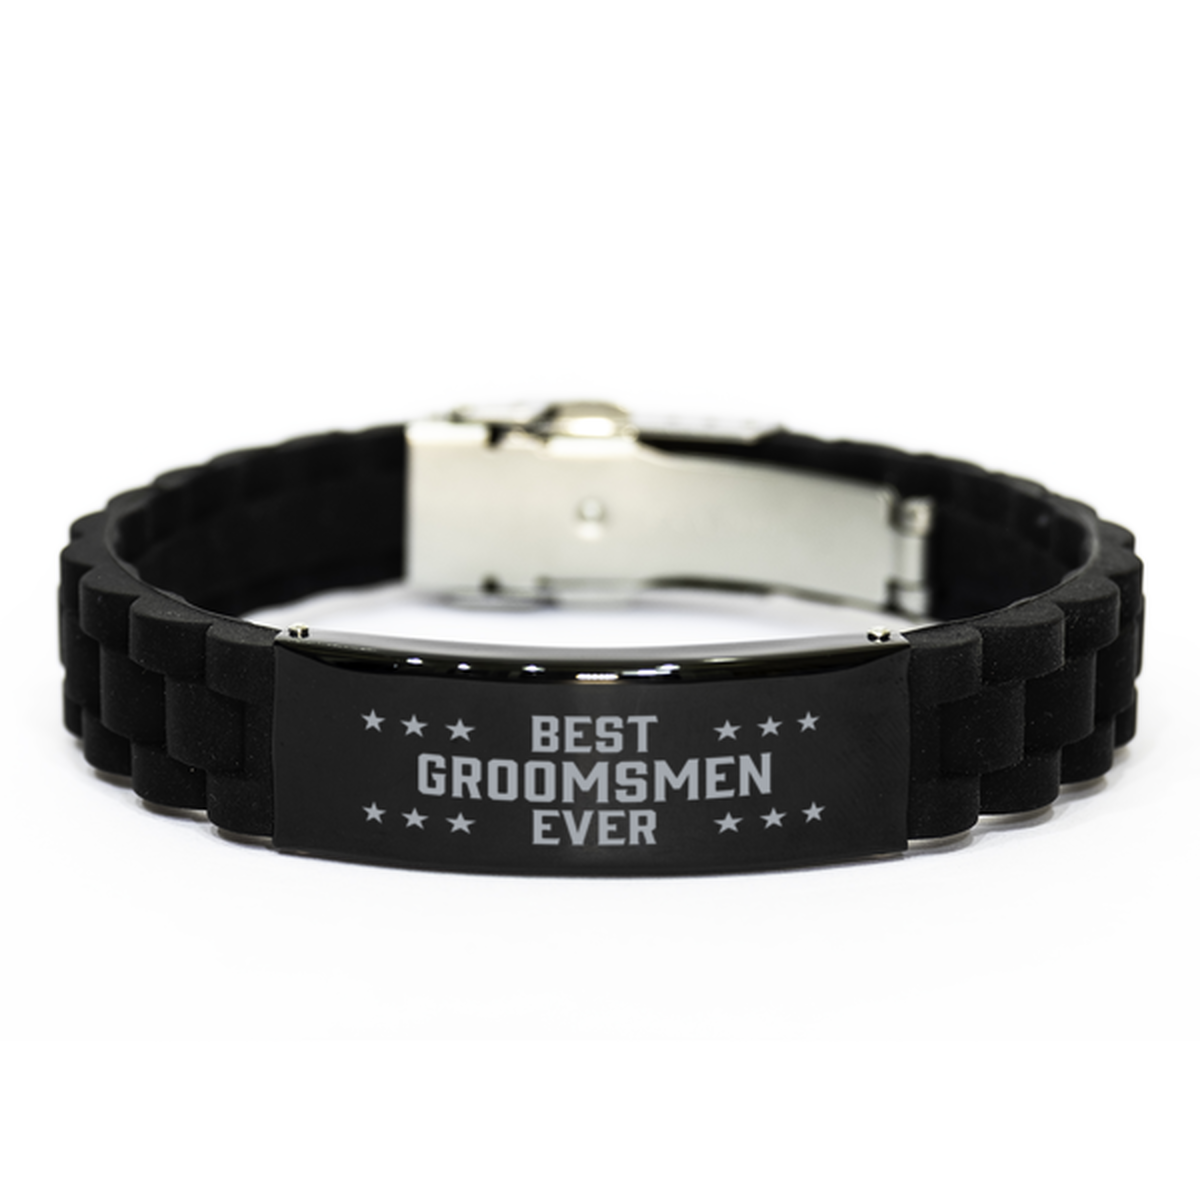 Best Groomsmen Ever Groomsmen Gifts, Funny Black Engraved Bracelet For Groomsmen, Family Gifts For Men